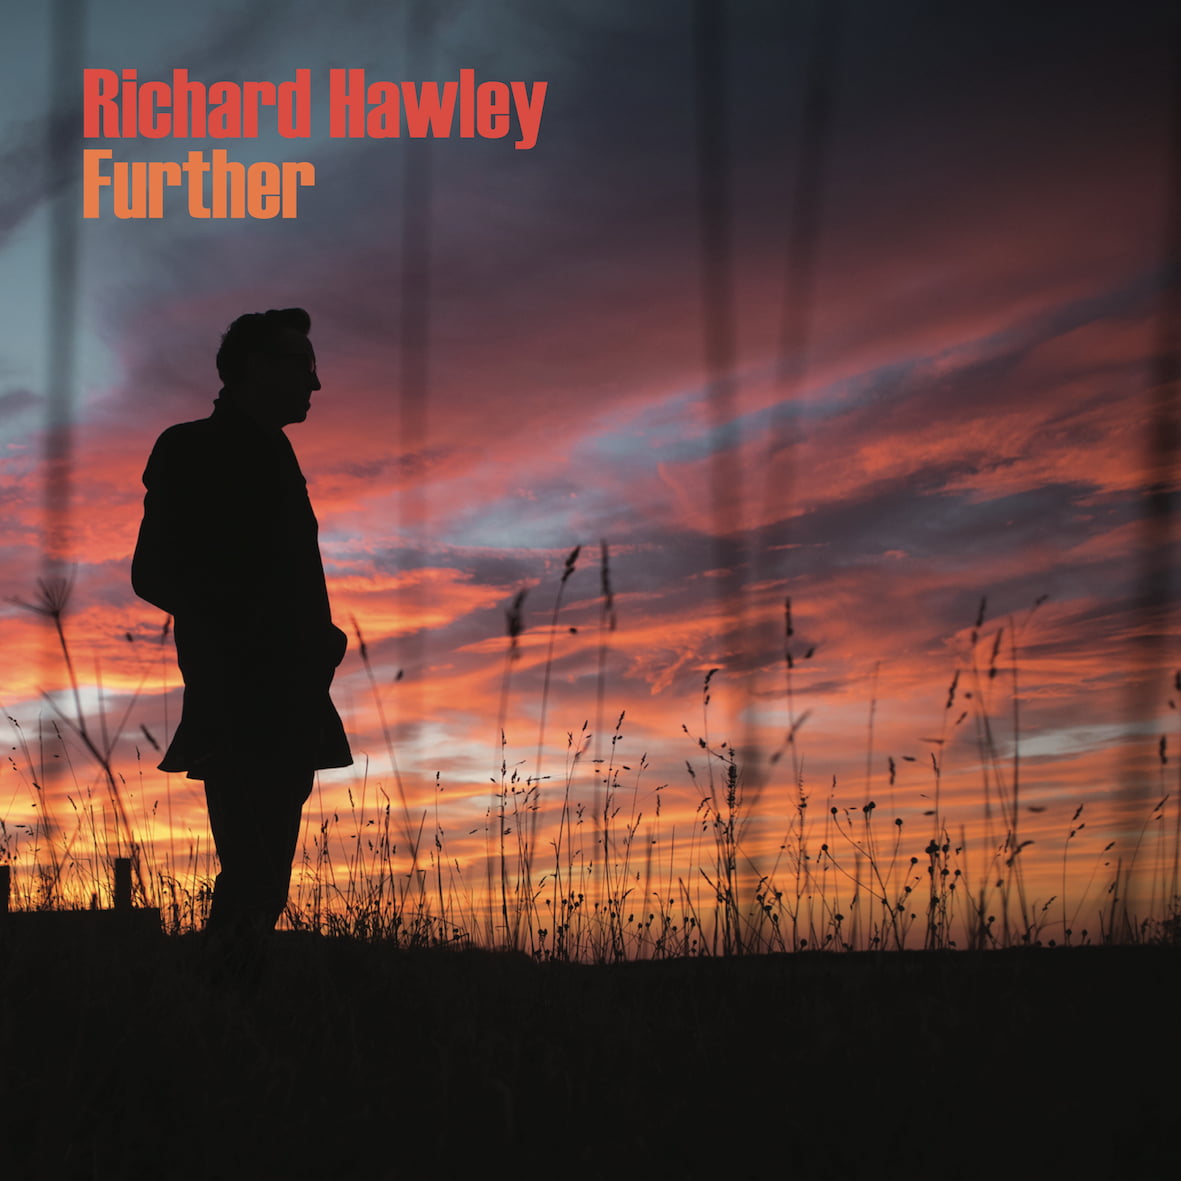 Richard Hawley